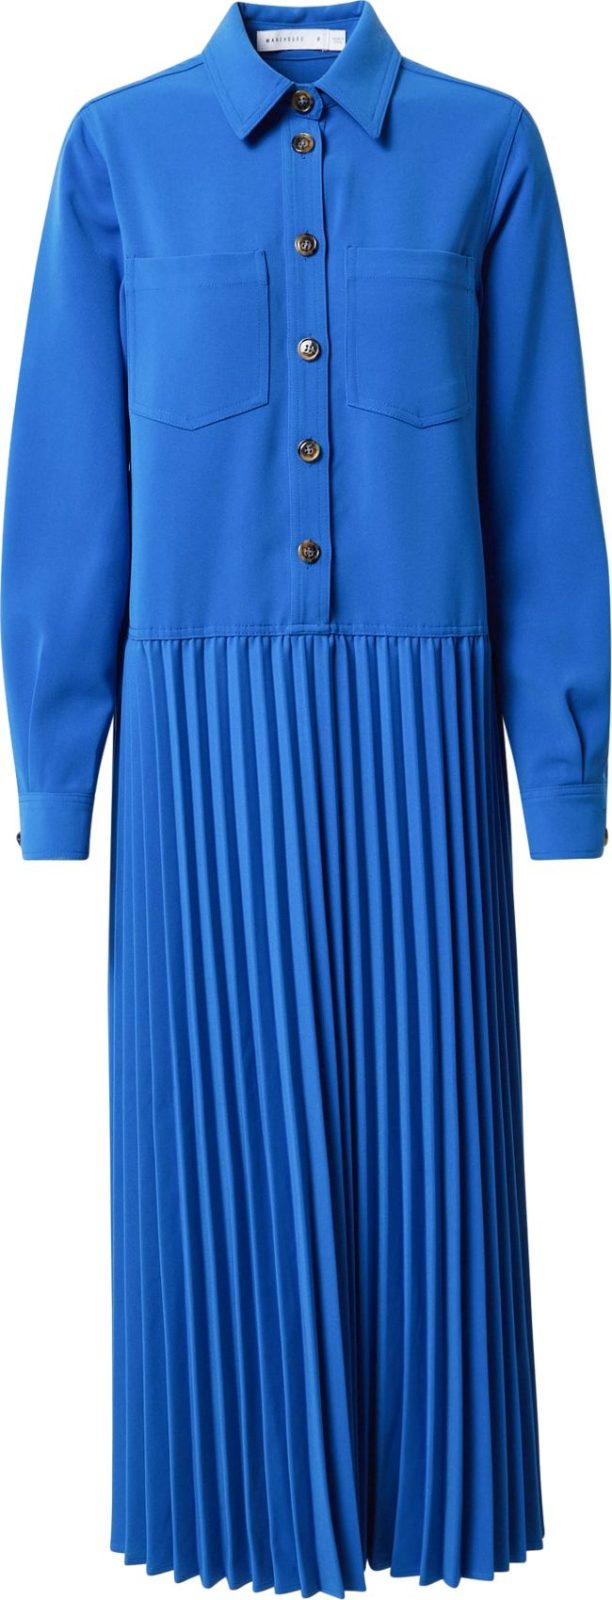 Warehouse Košilové šaty královská modrá